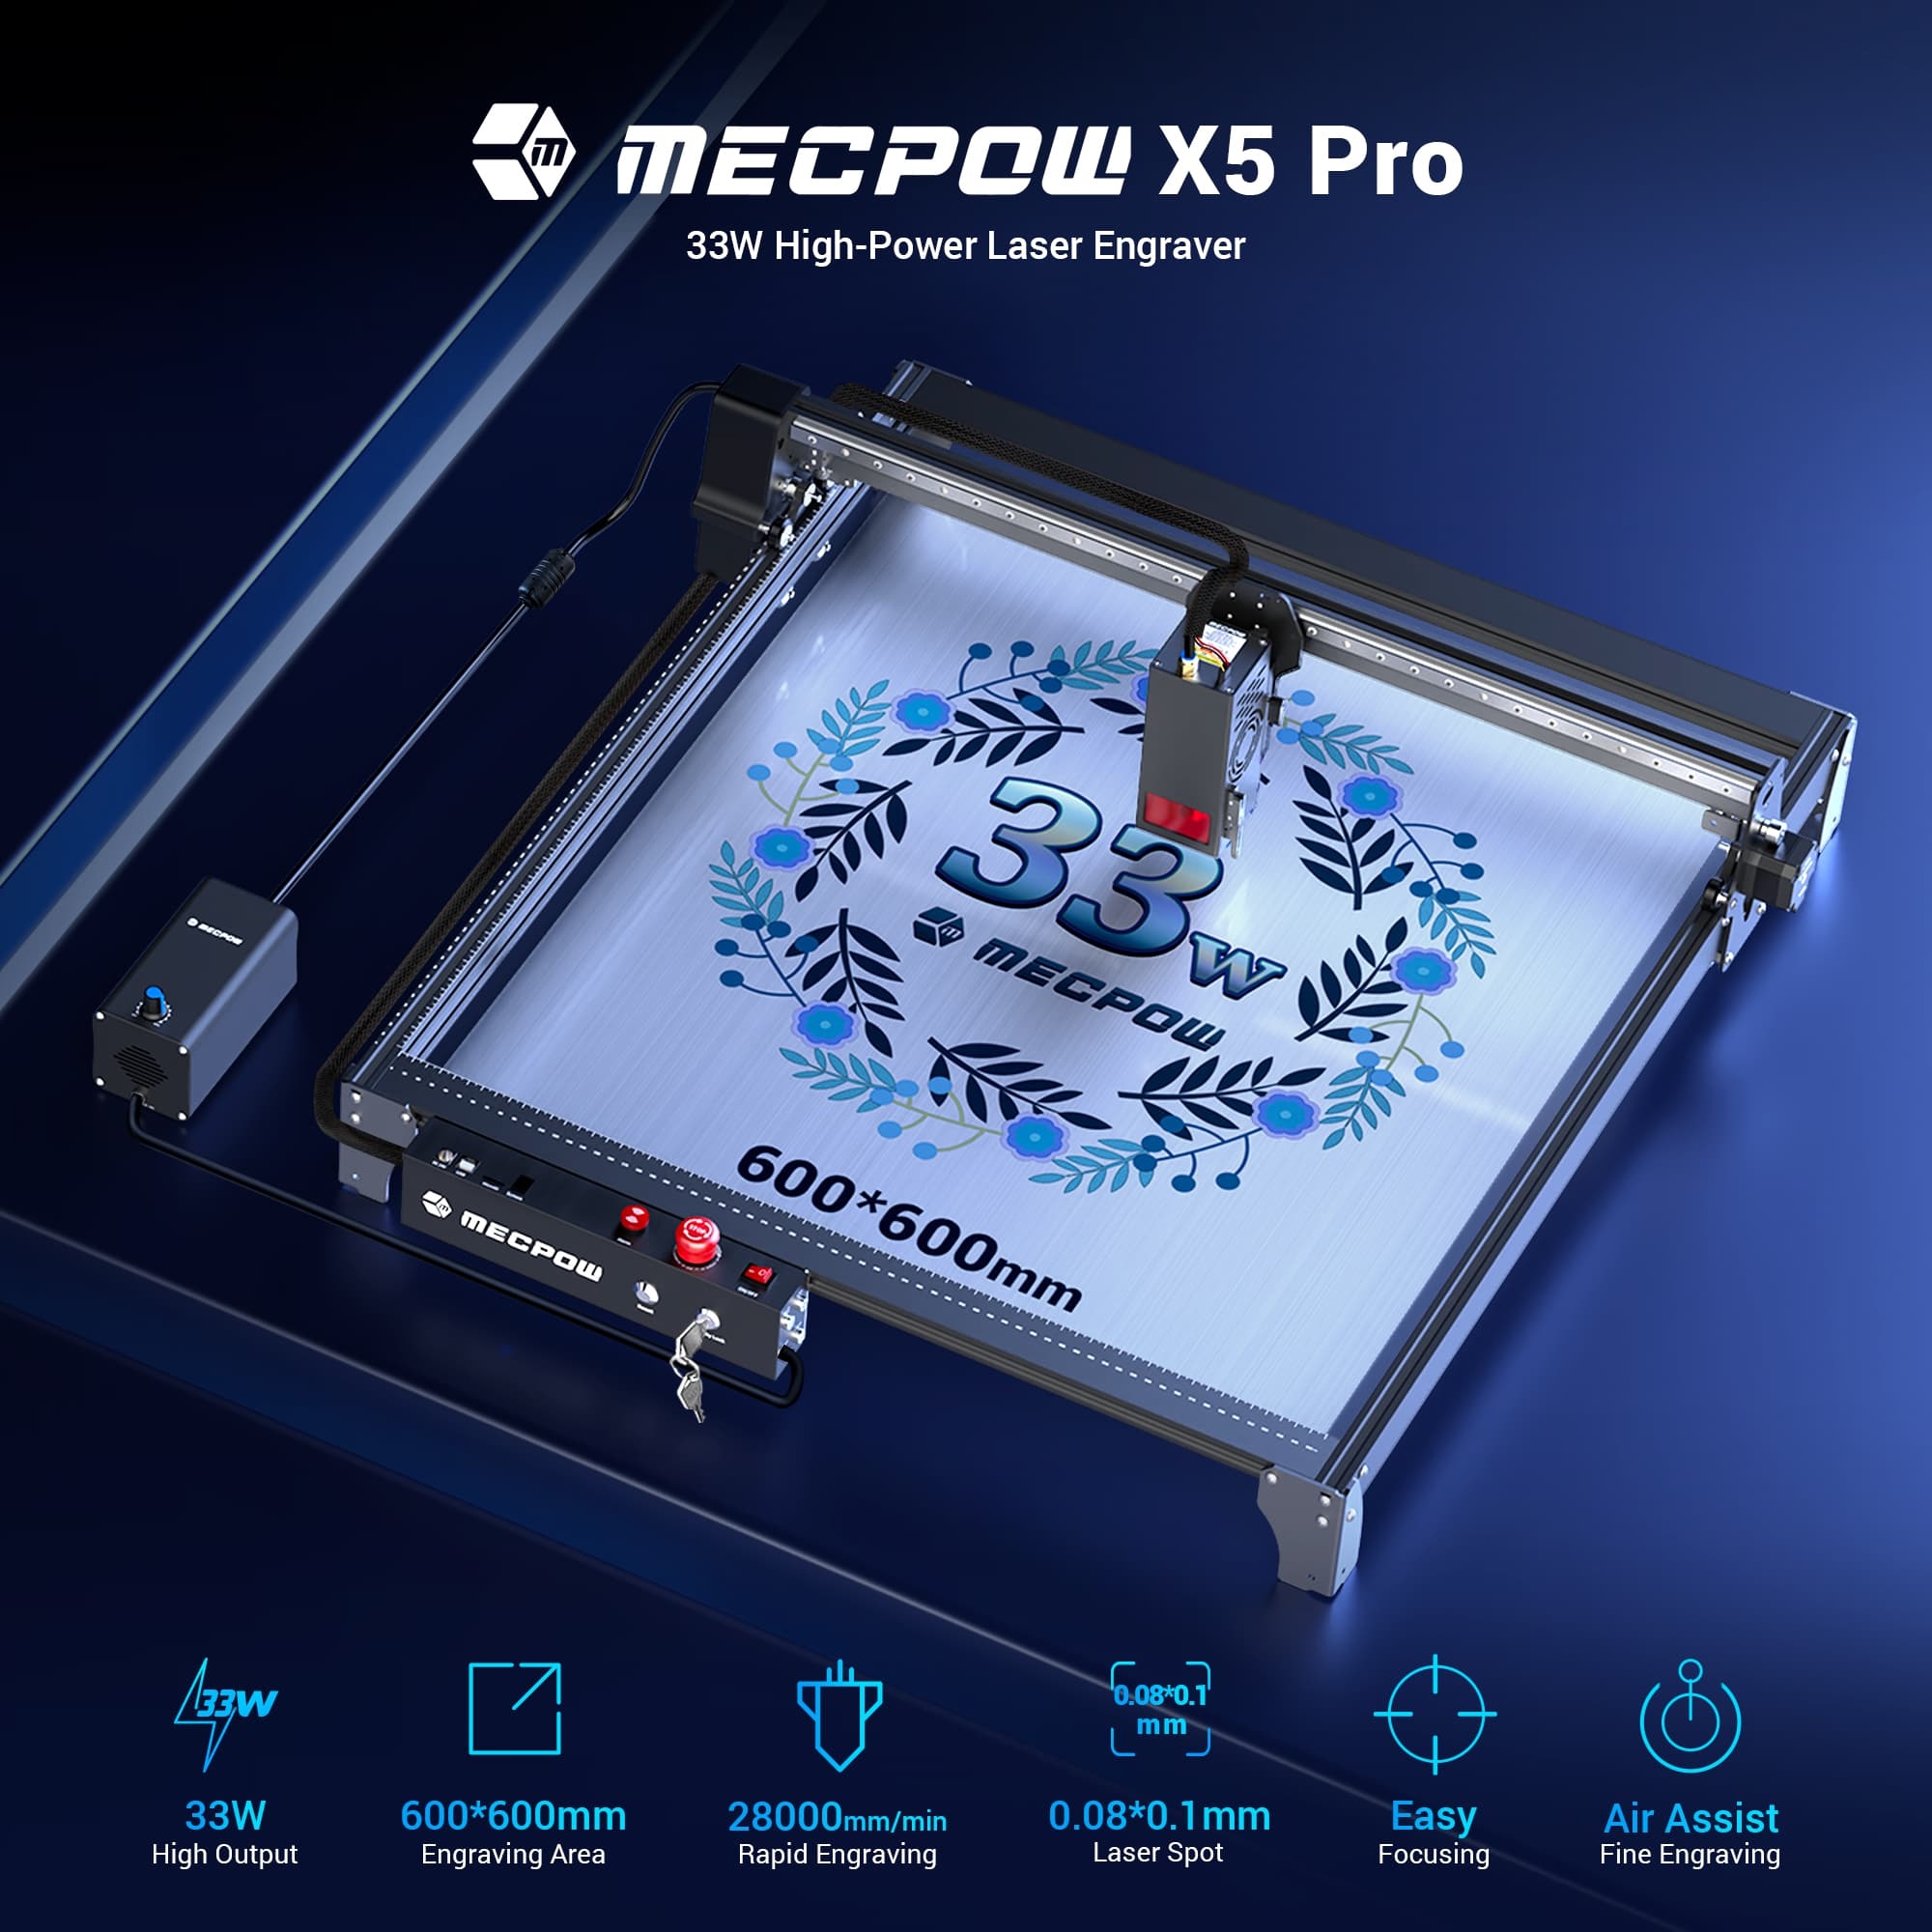 Mecpow X5 Pro Laserová gravírovacia fréza, výkon lasera 33 W, vzduchový asistent, laserový bod 0,08x0,1 mm, rýchlosť gravírovania 28000 mm/min, bezpečnostný zámok, núdzové zastavenie, detekcia plameňa, 600x600 mm